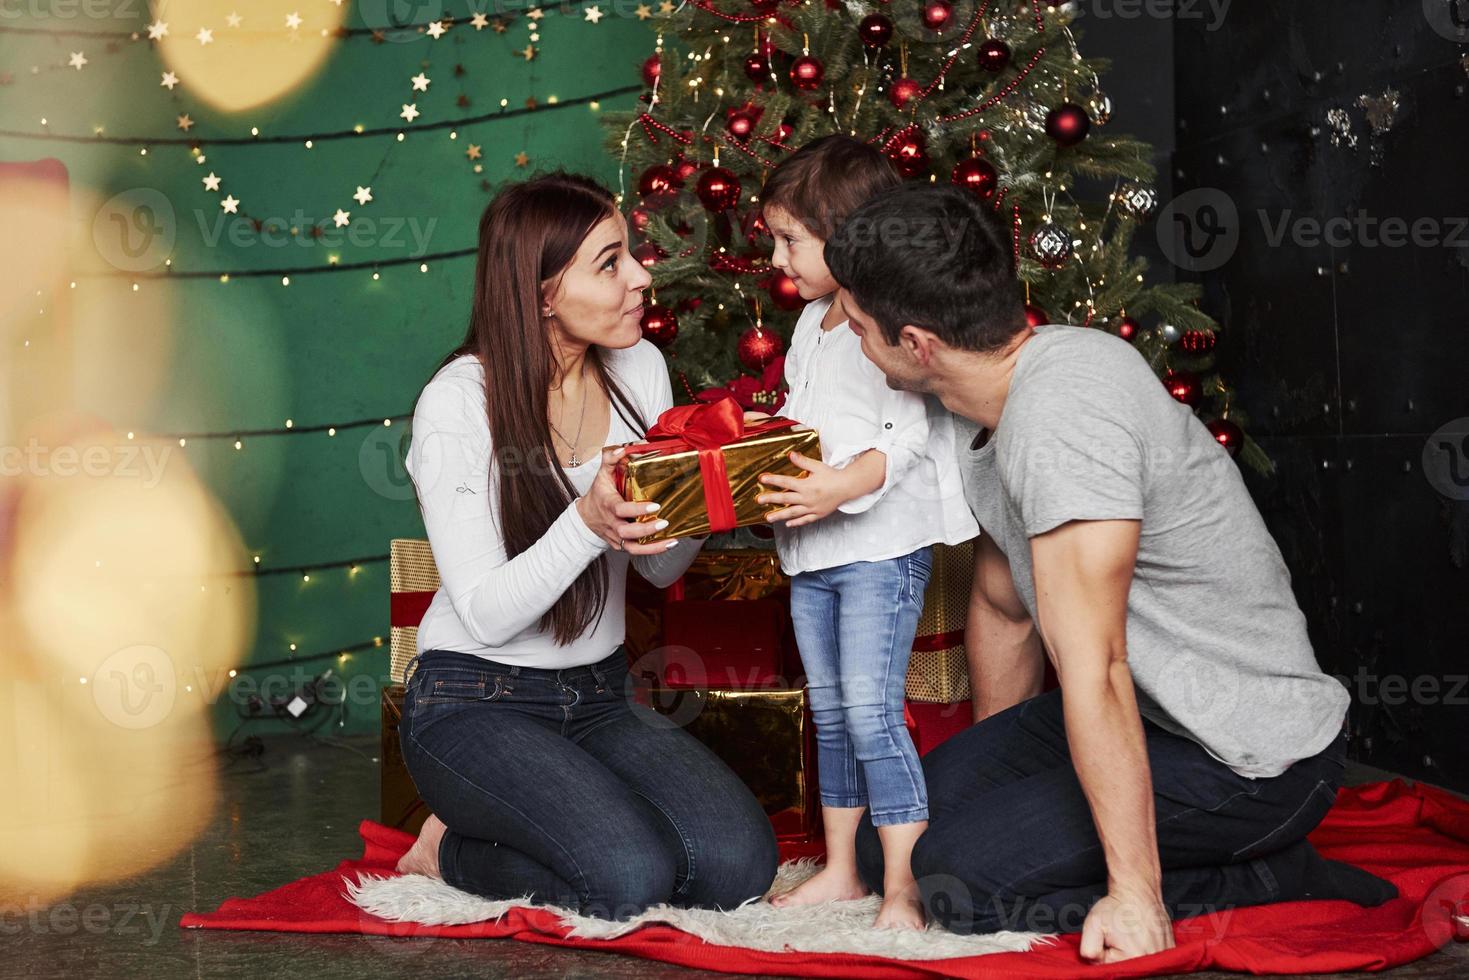 finalmente possiamo aprire questo regalo. la bella famiglia si siede vicino all'albero di Natale con scatole regalo la sera d'inverno, godendosi il tempo trascorso insieme foto